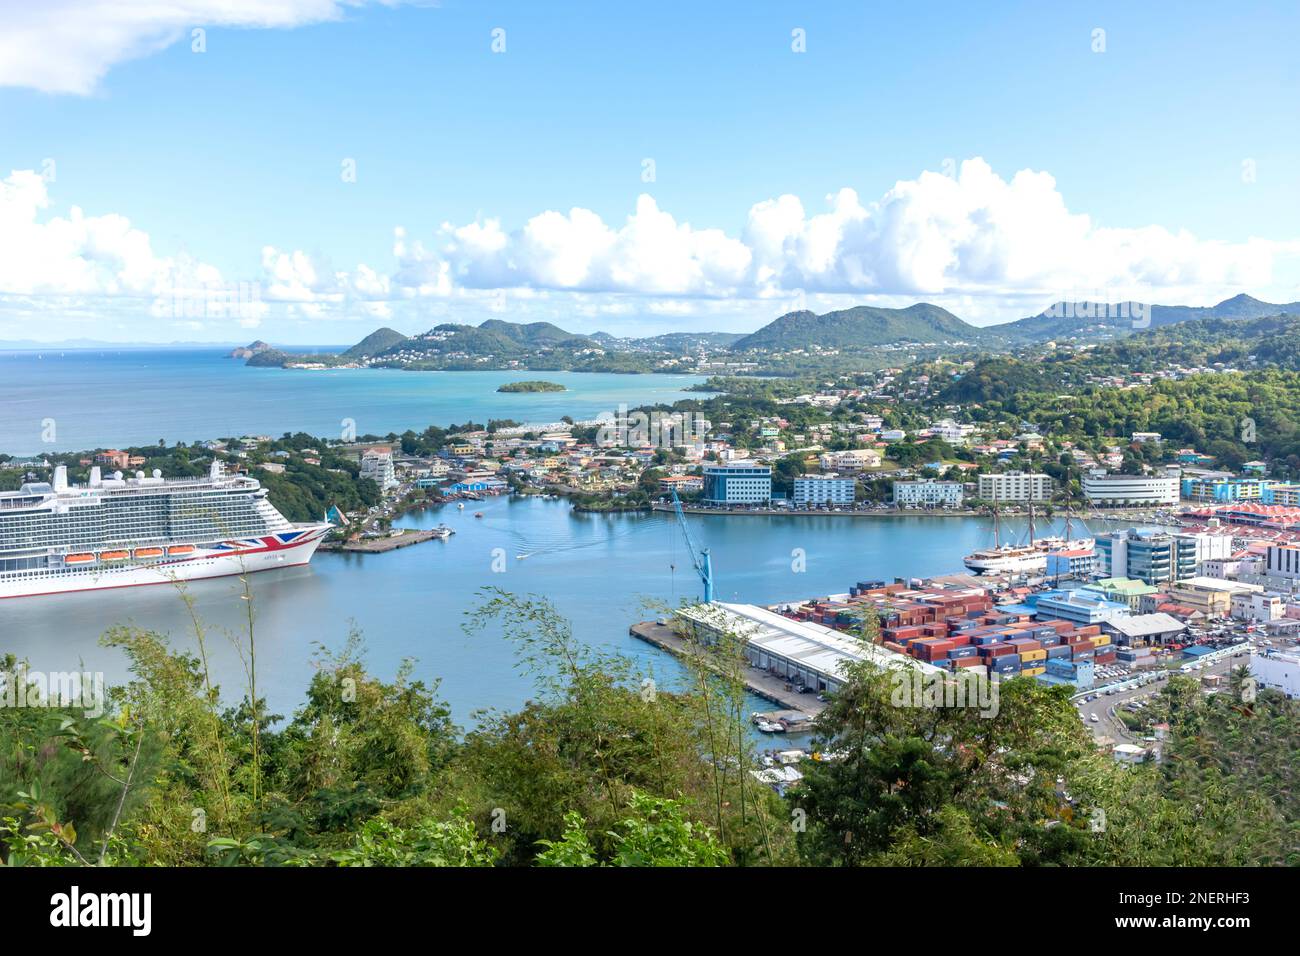 Vue de la ville depuis le point de vue de Morne Fortune montrant le bateau de croisière P&O Arvia, Castries, Sainte-Lucie, Petites Antilles, Caraïbes Banque D'Images